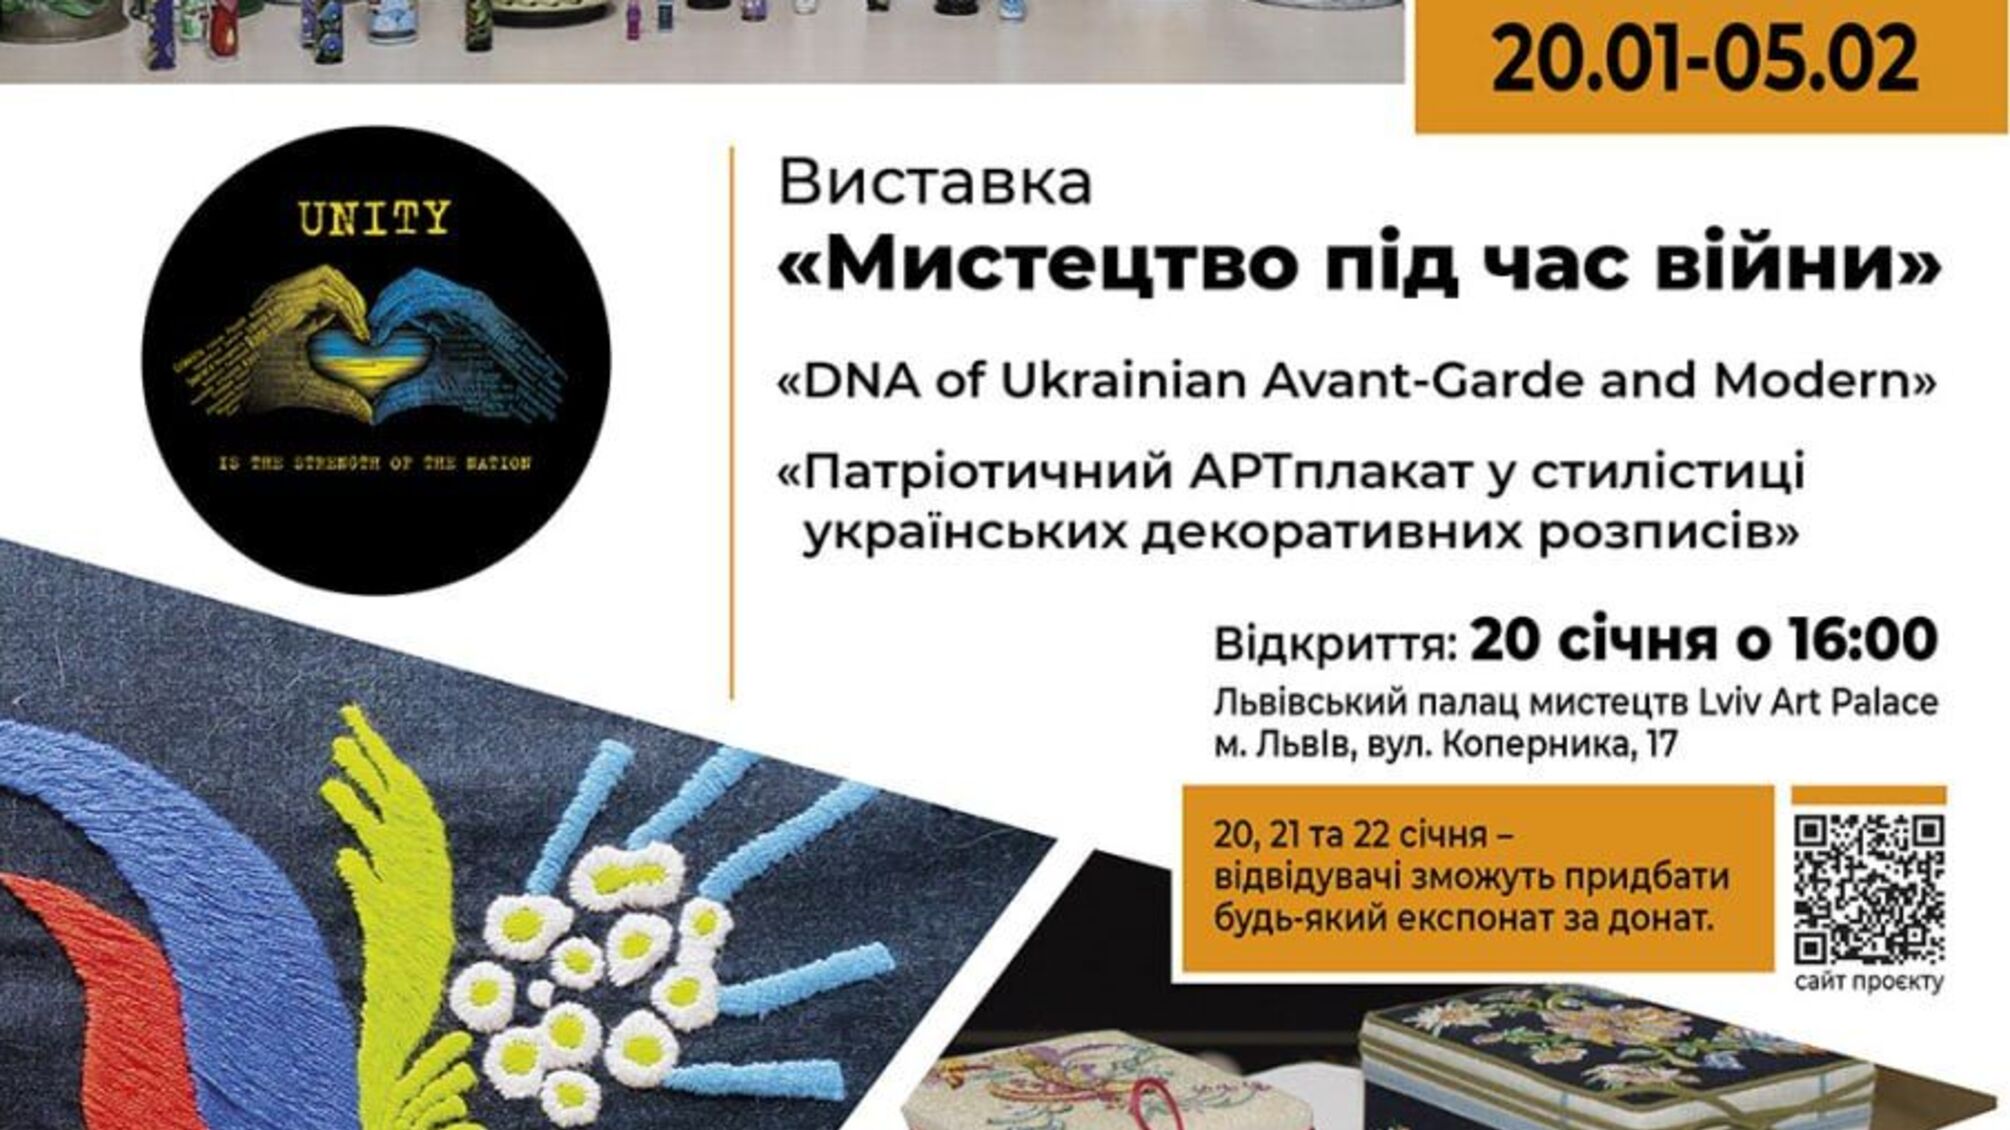 Во Львове открывается благотворительная выставка работ украинских мастериц